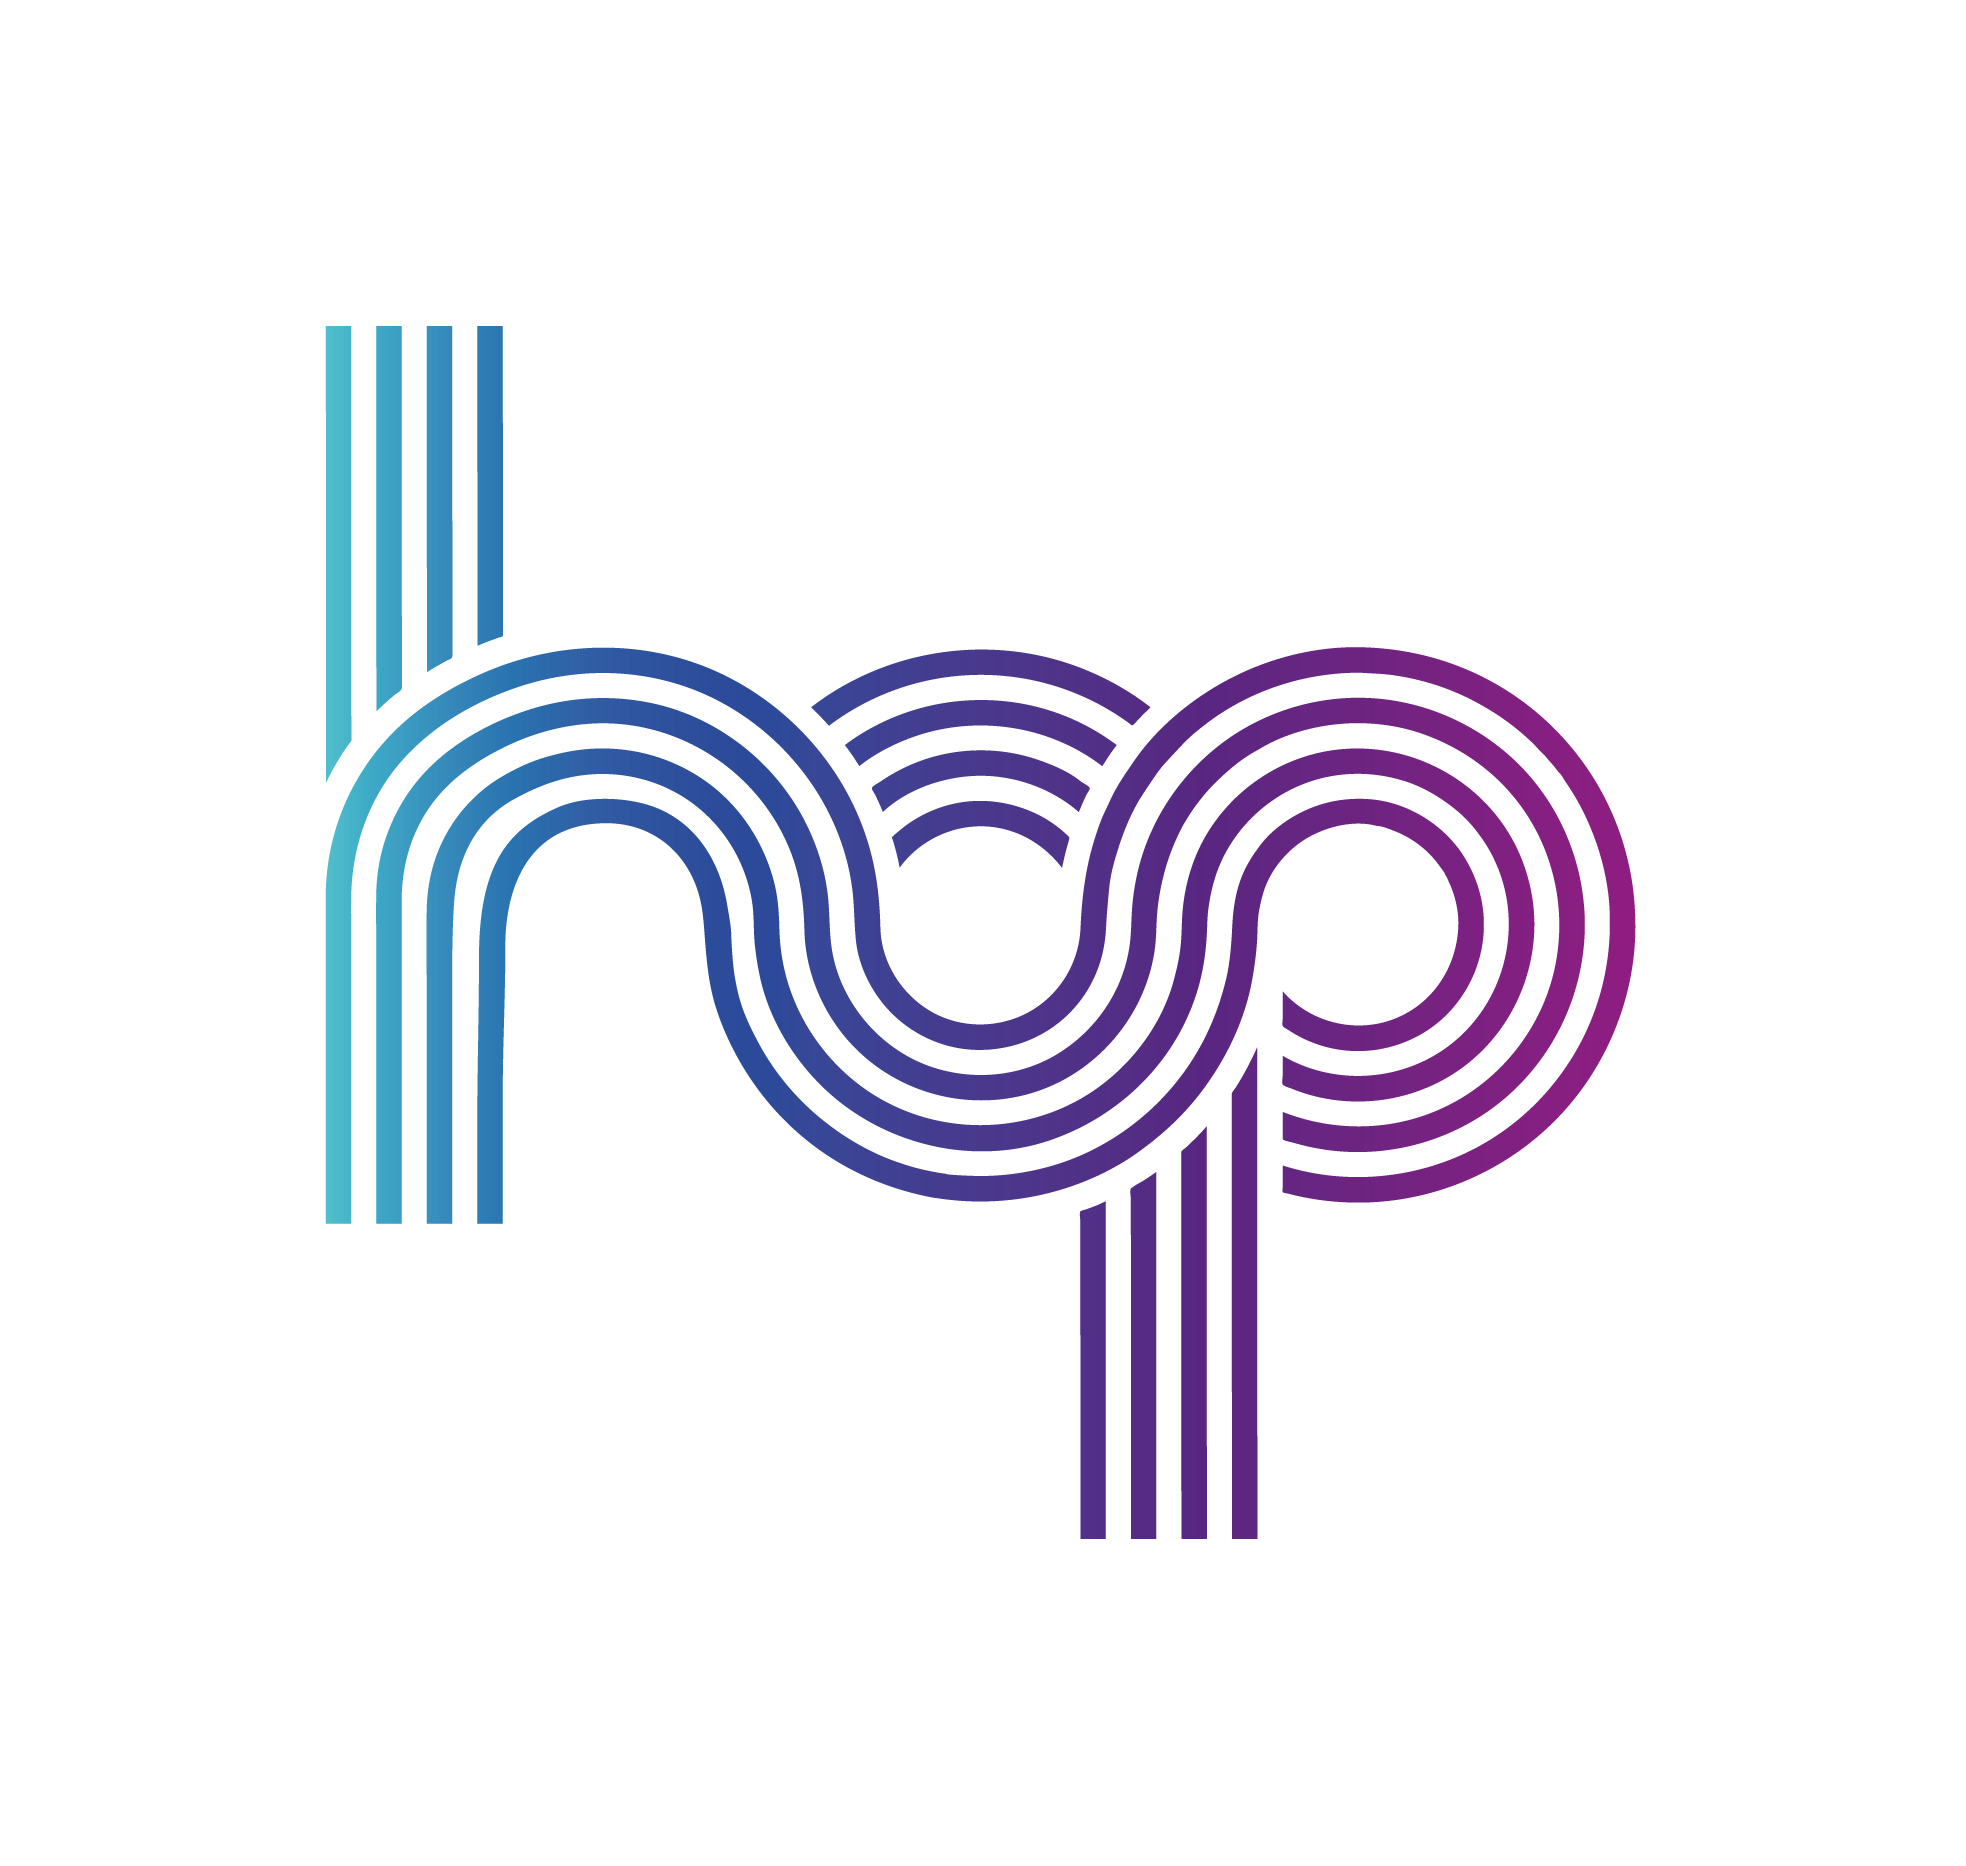 HOP Logo